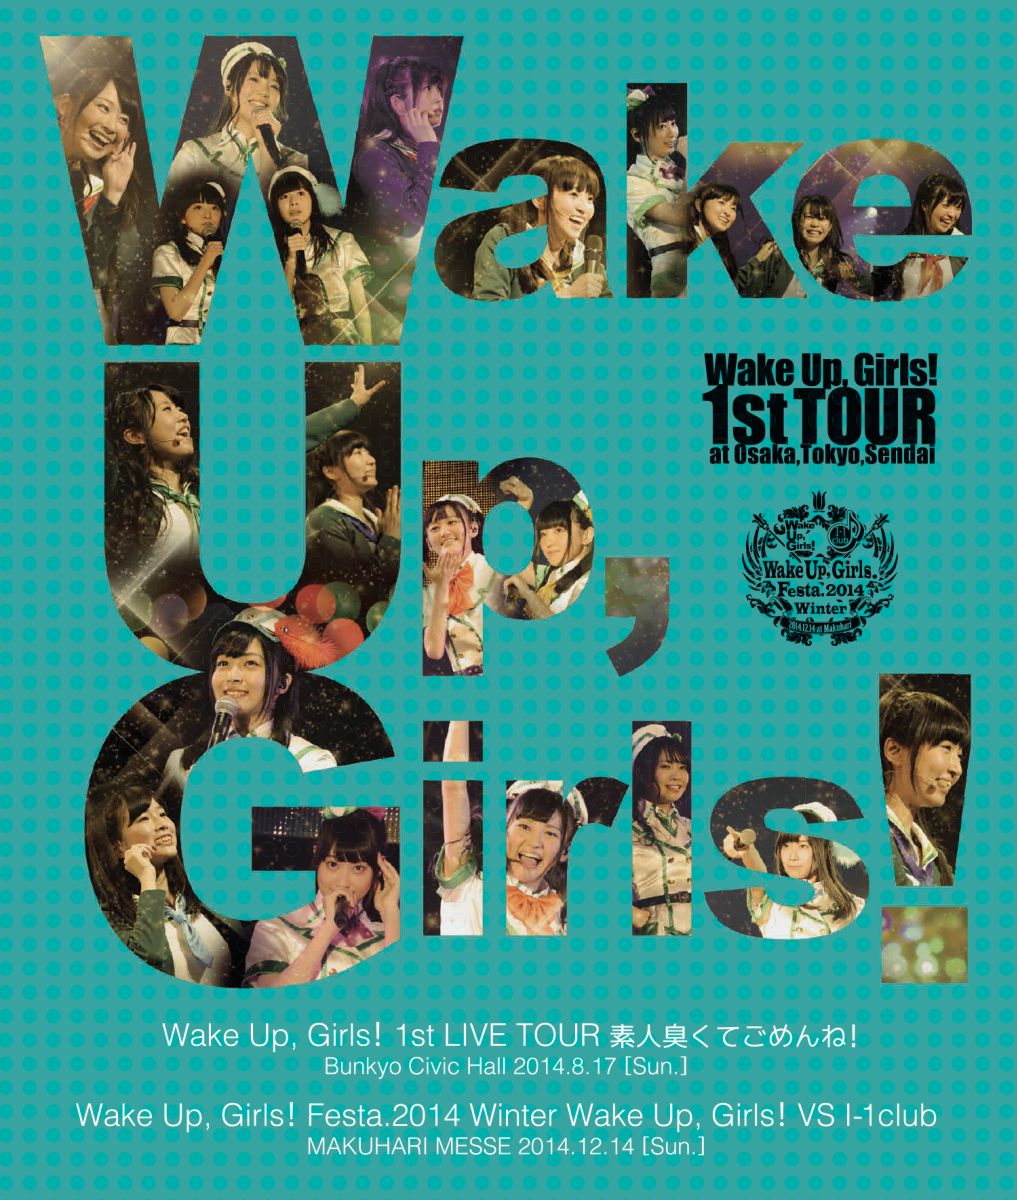 【特典なし】Wake Up, Girls! 1st LIVE TOUR 素人臭くてごめんね。/Wake Up, Girls!VS I-1club【Blu-ray】画像